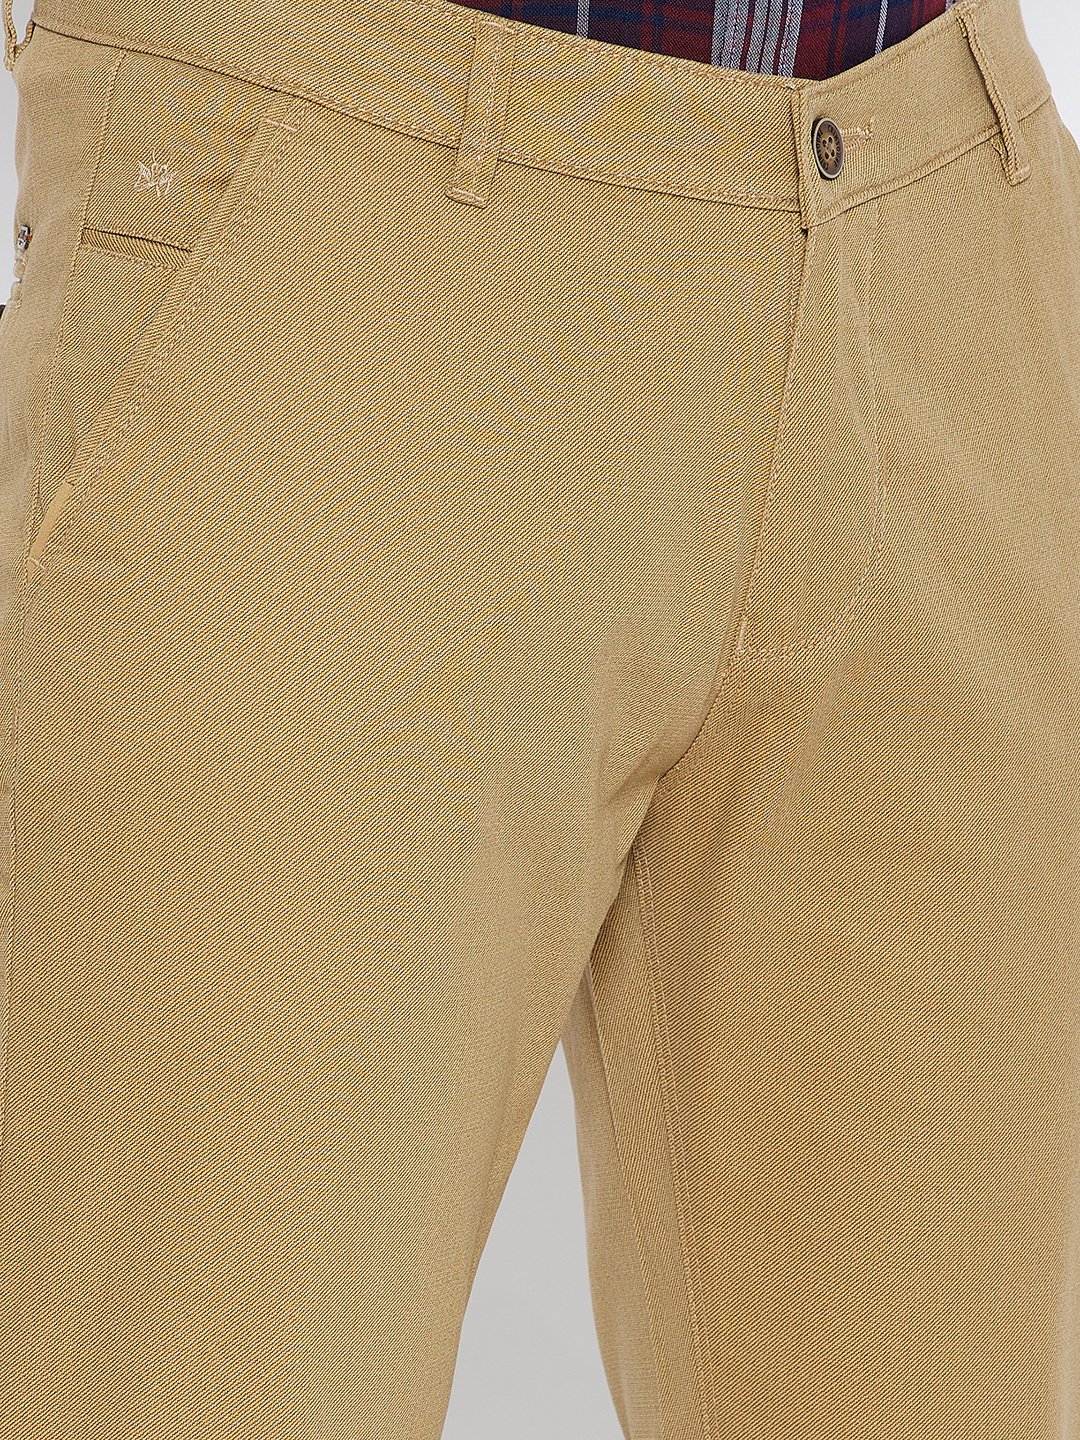 Khaki Printed Slim Fit Trousers - Men Trousers